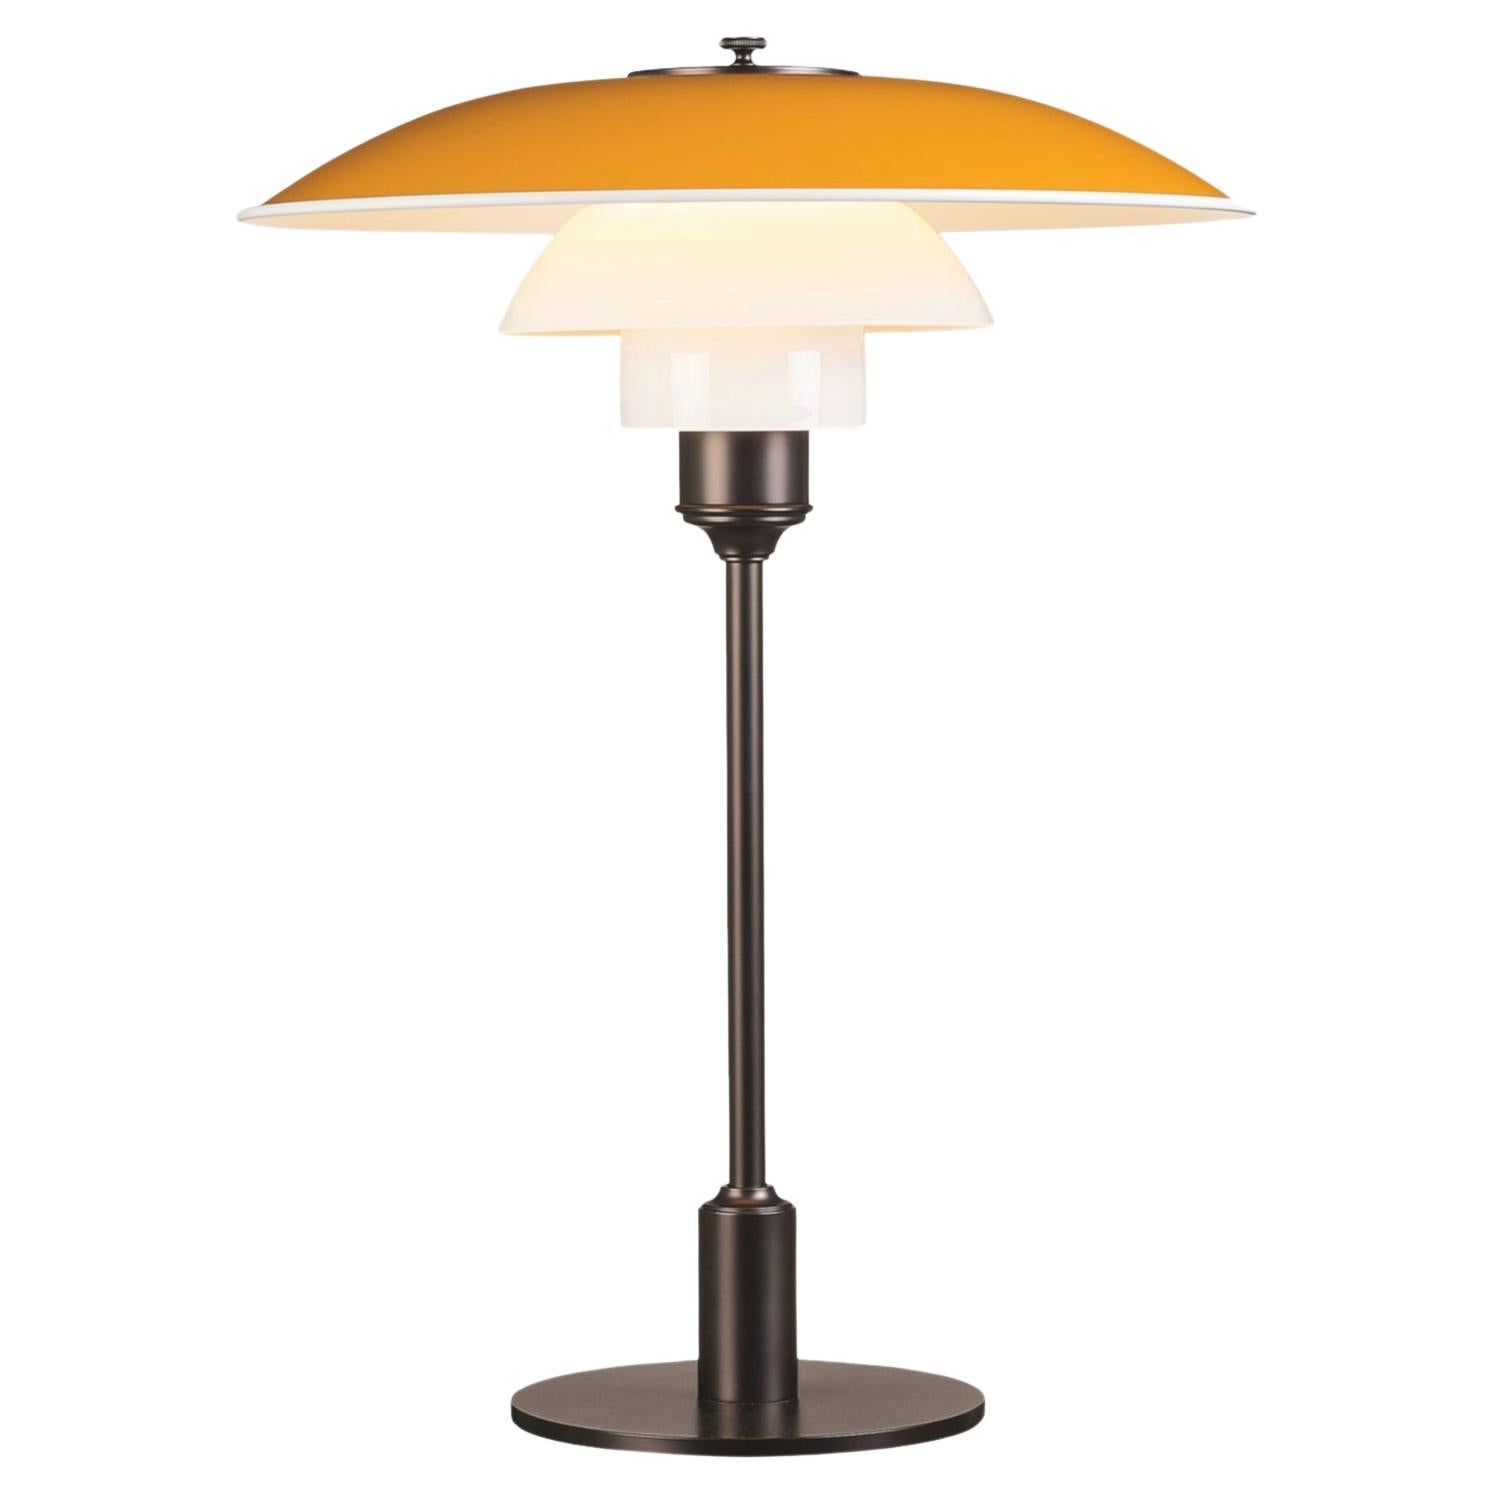 Poul Henningsen Ph 3½-2½ Table Lamp for Louis Poulsen